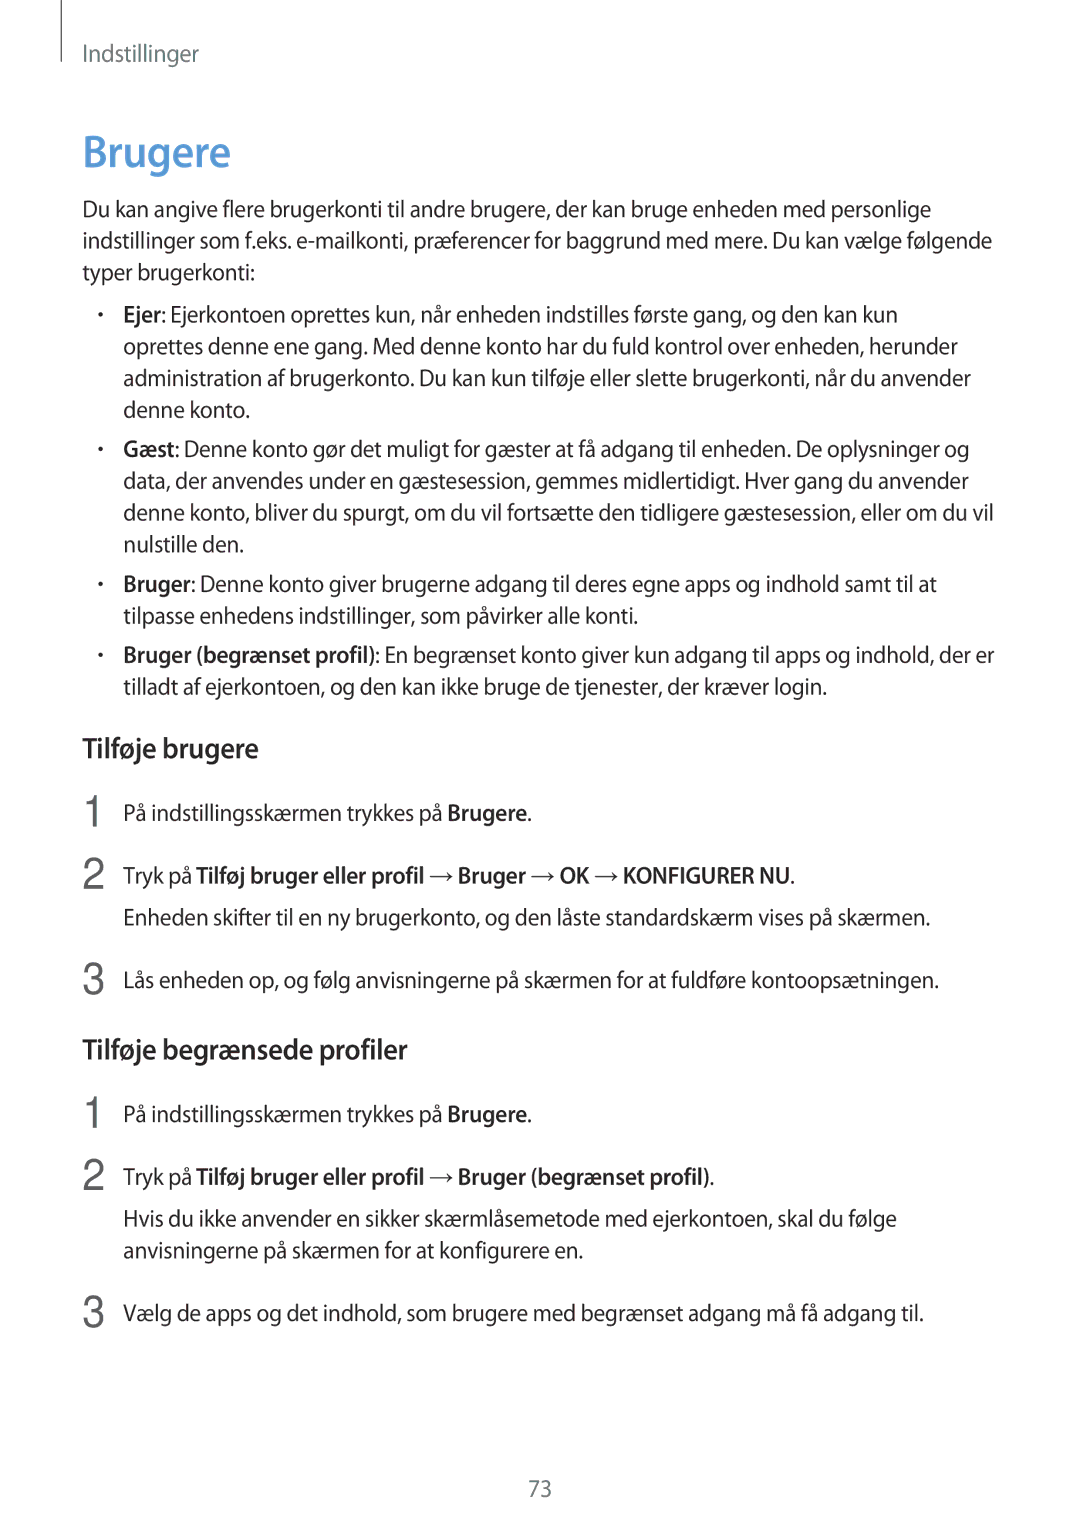 Samsung SM-T580NZWANEE manual Tilføje brugere, Tilføje begrænsede profiler, På indstillingsskærmen trykkes på Brugere 